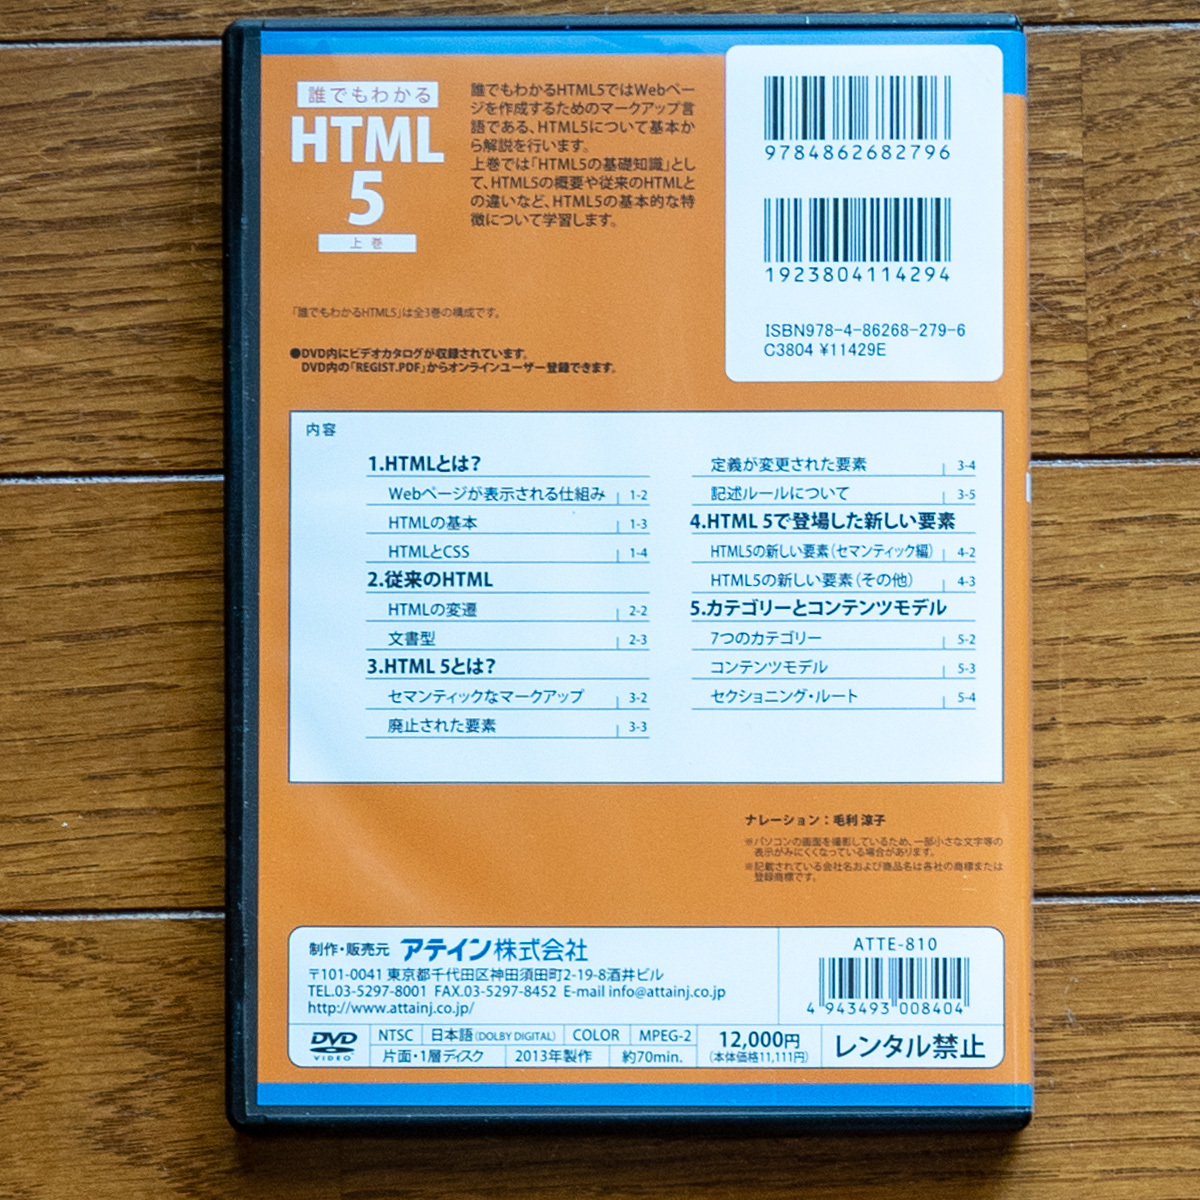 DVD каждый понимать HTML5 ( сверху, средний, внизу ) 3 шт общая сумма 36,000 иен внизу шт. нераспечатанный новый товар.